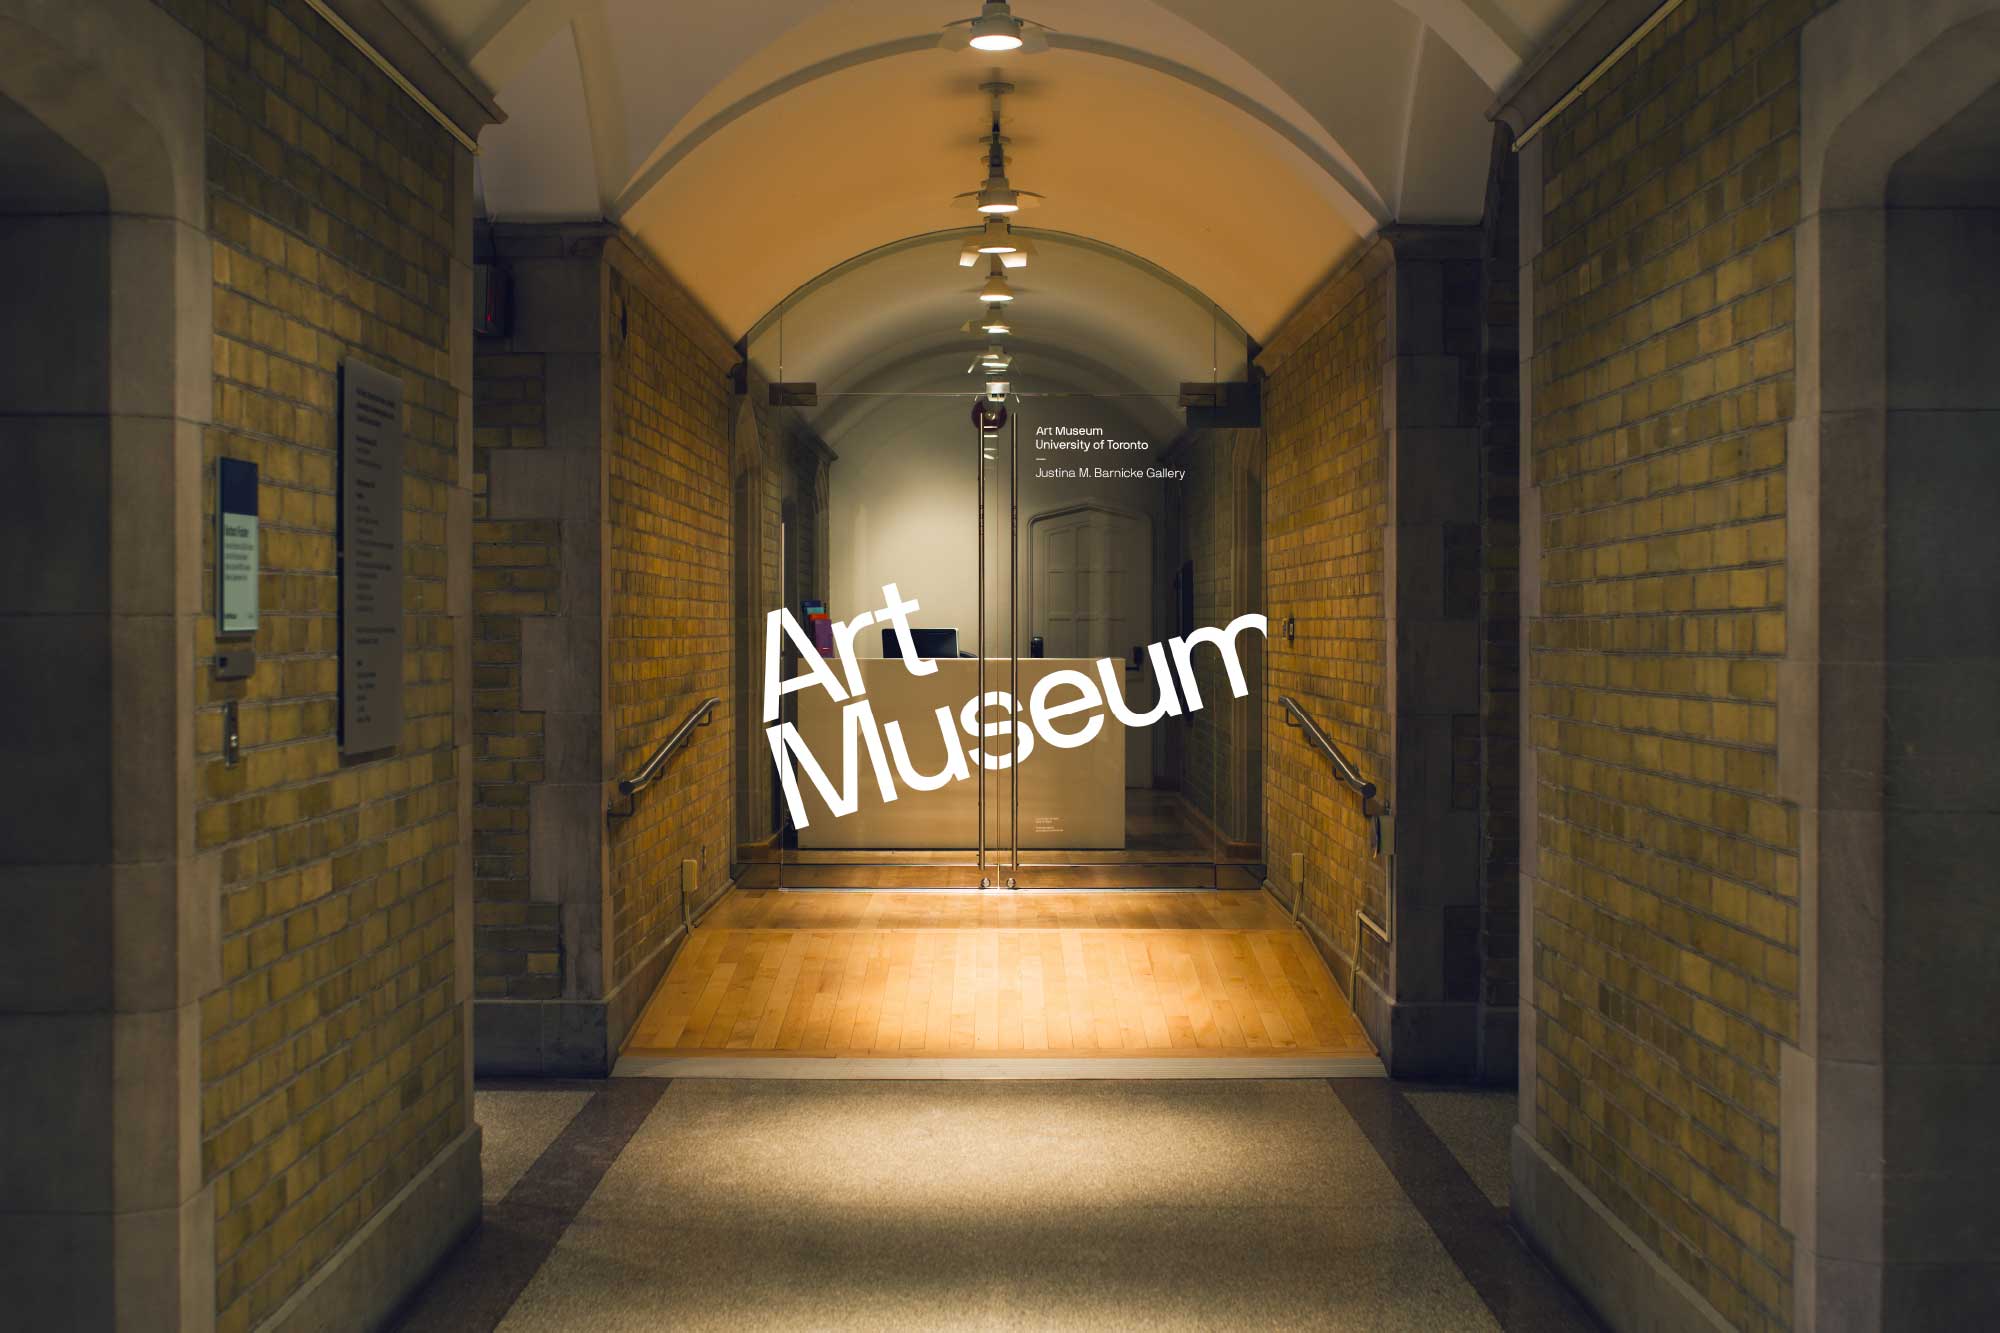 Art Museum door signage